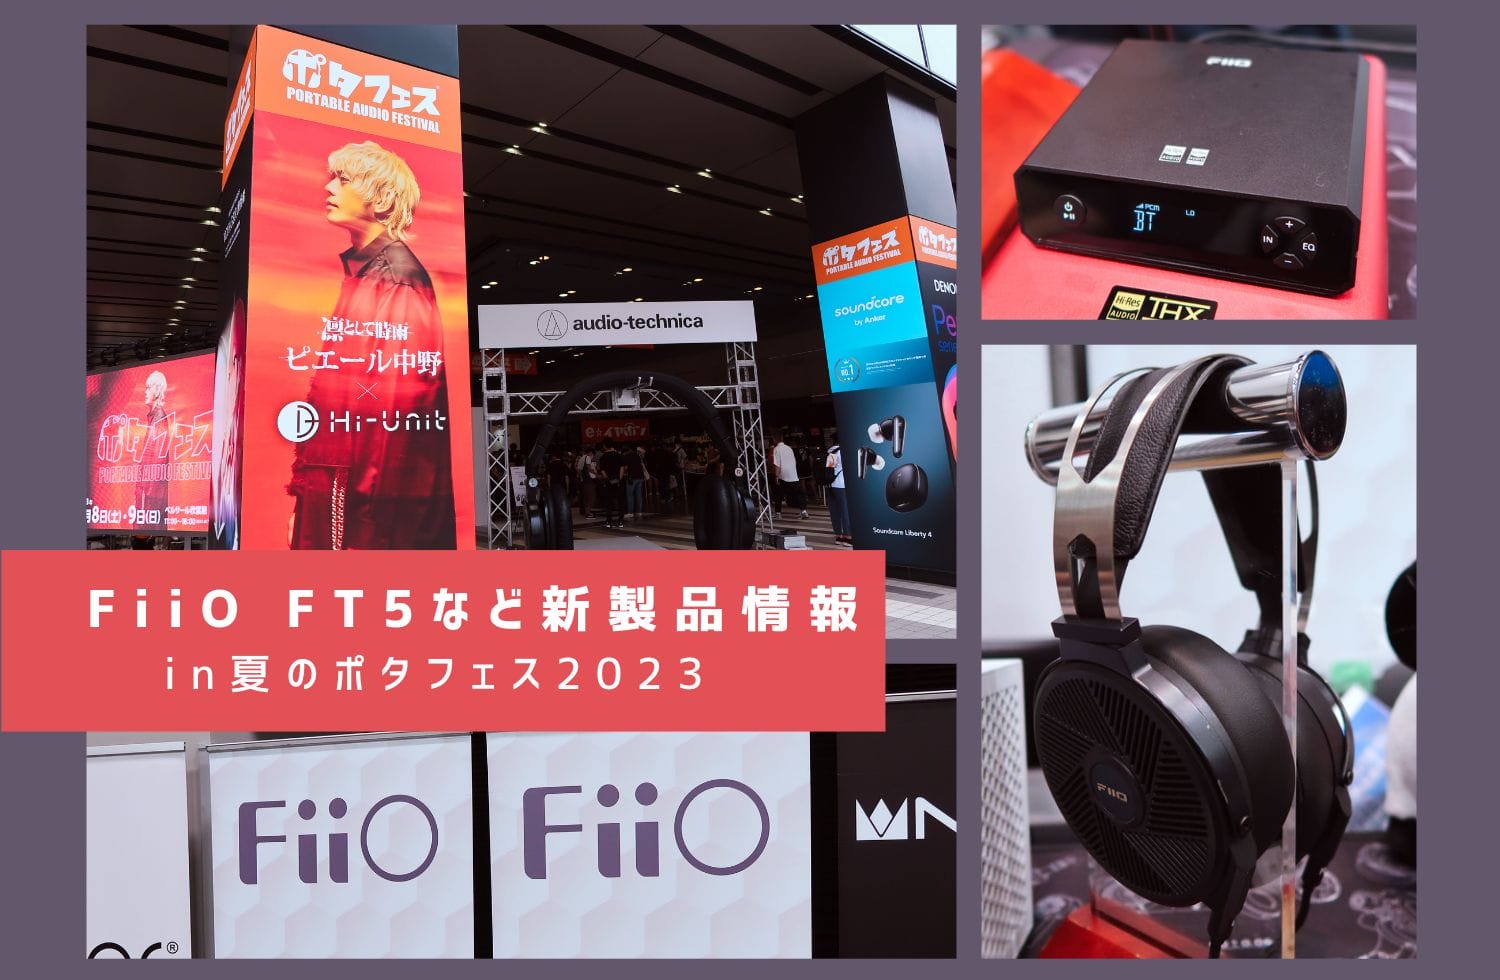 FiiOFT5など新製品情報 in 夏のポタフェス2023